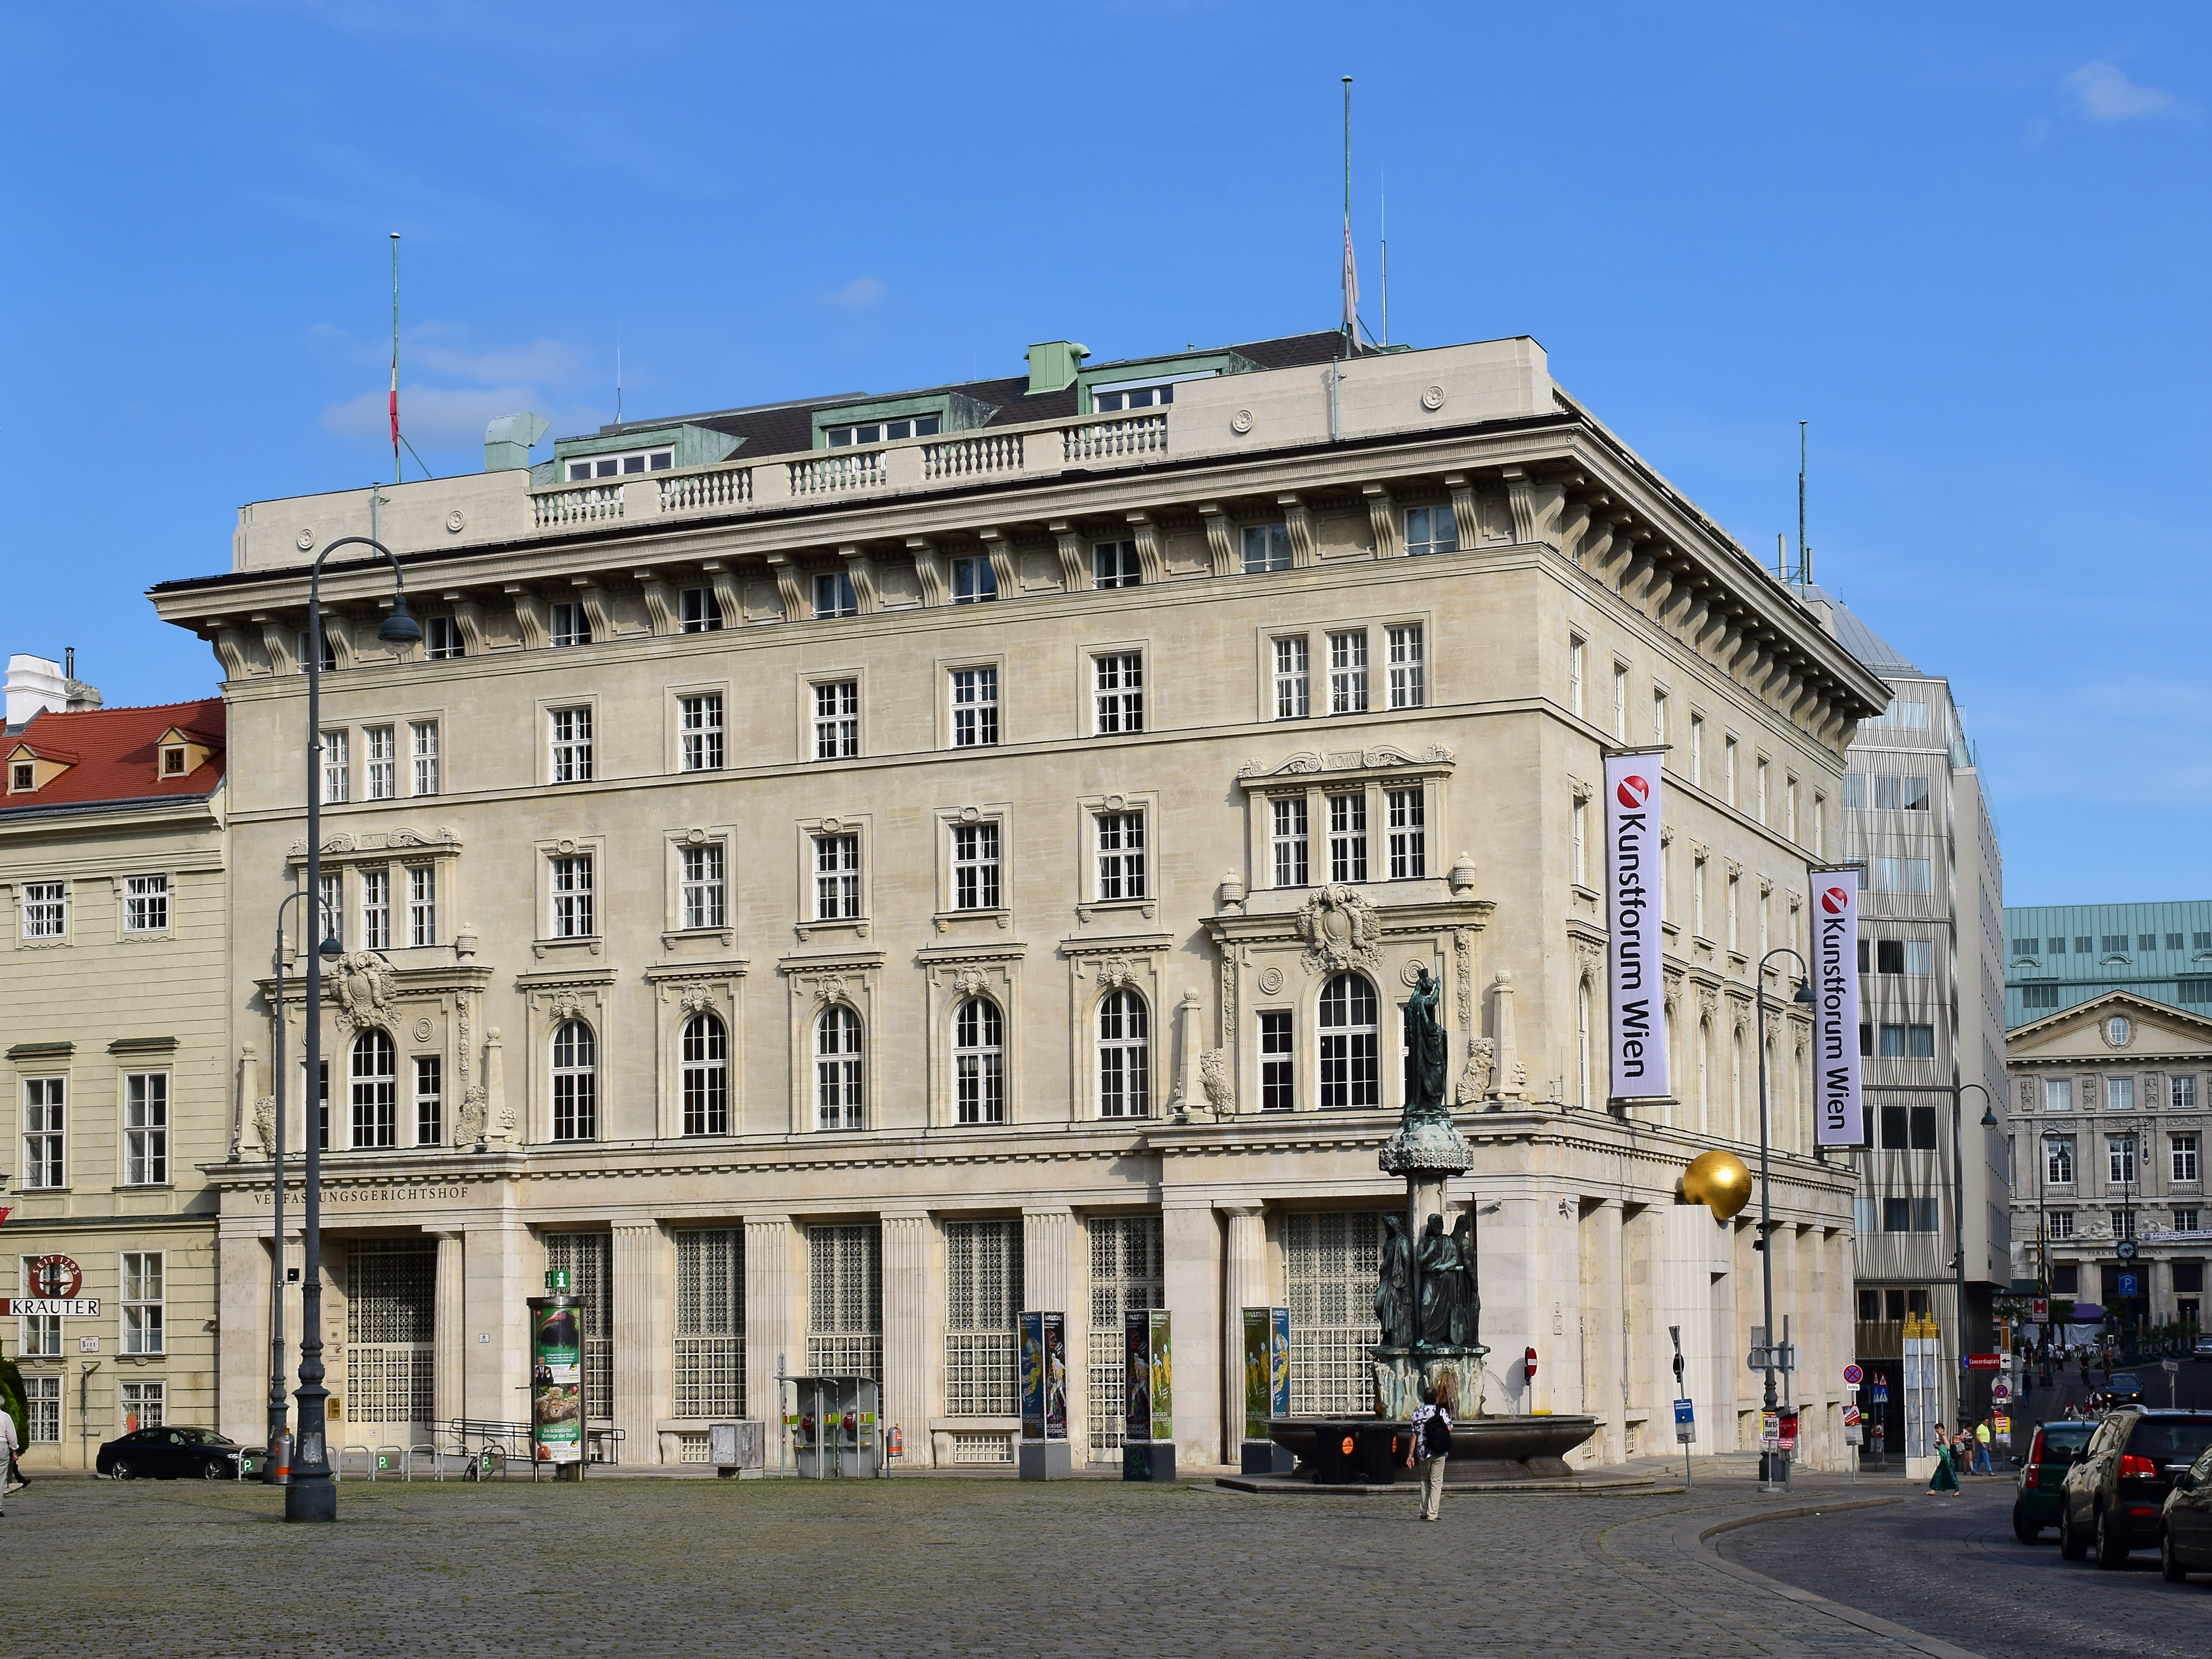 Wien-Innere Stadt - Verfassungsgerichtshof und Kunstforum